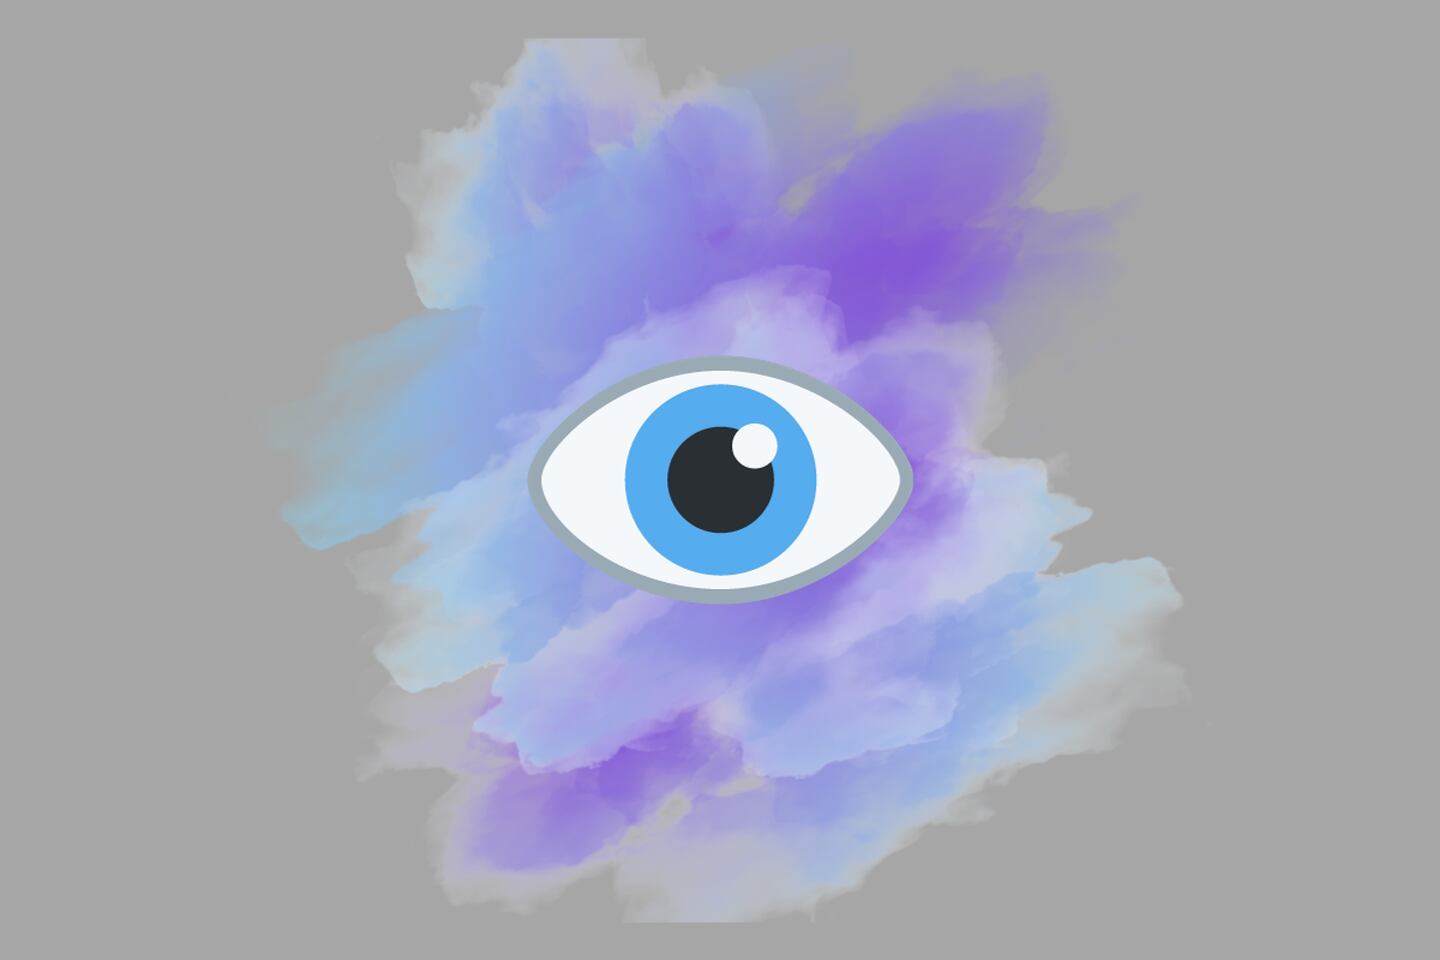 mancha morada y azul sobre un fondo gris. También aparece un ojo celeste en la imagen.